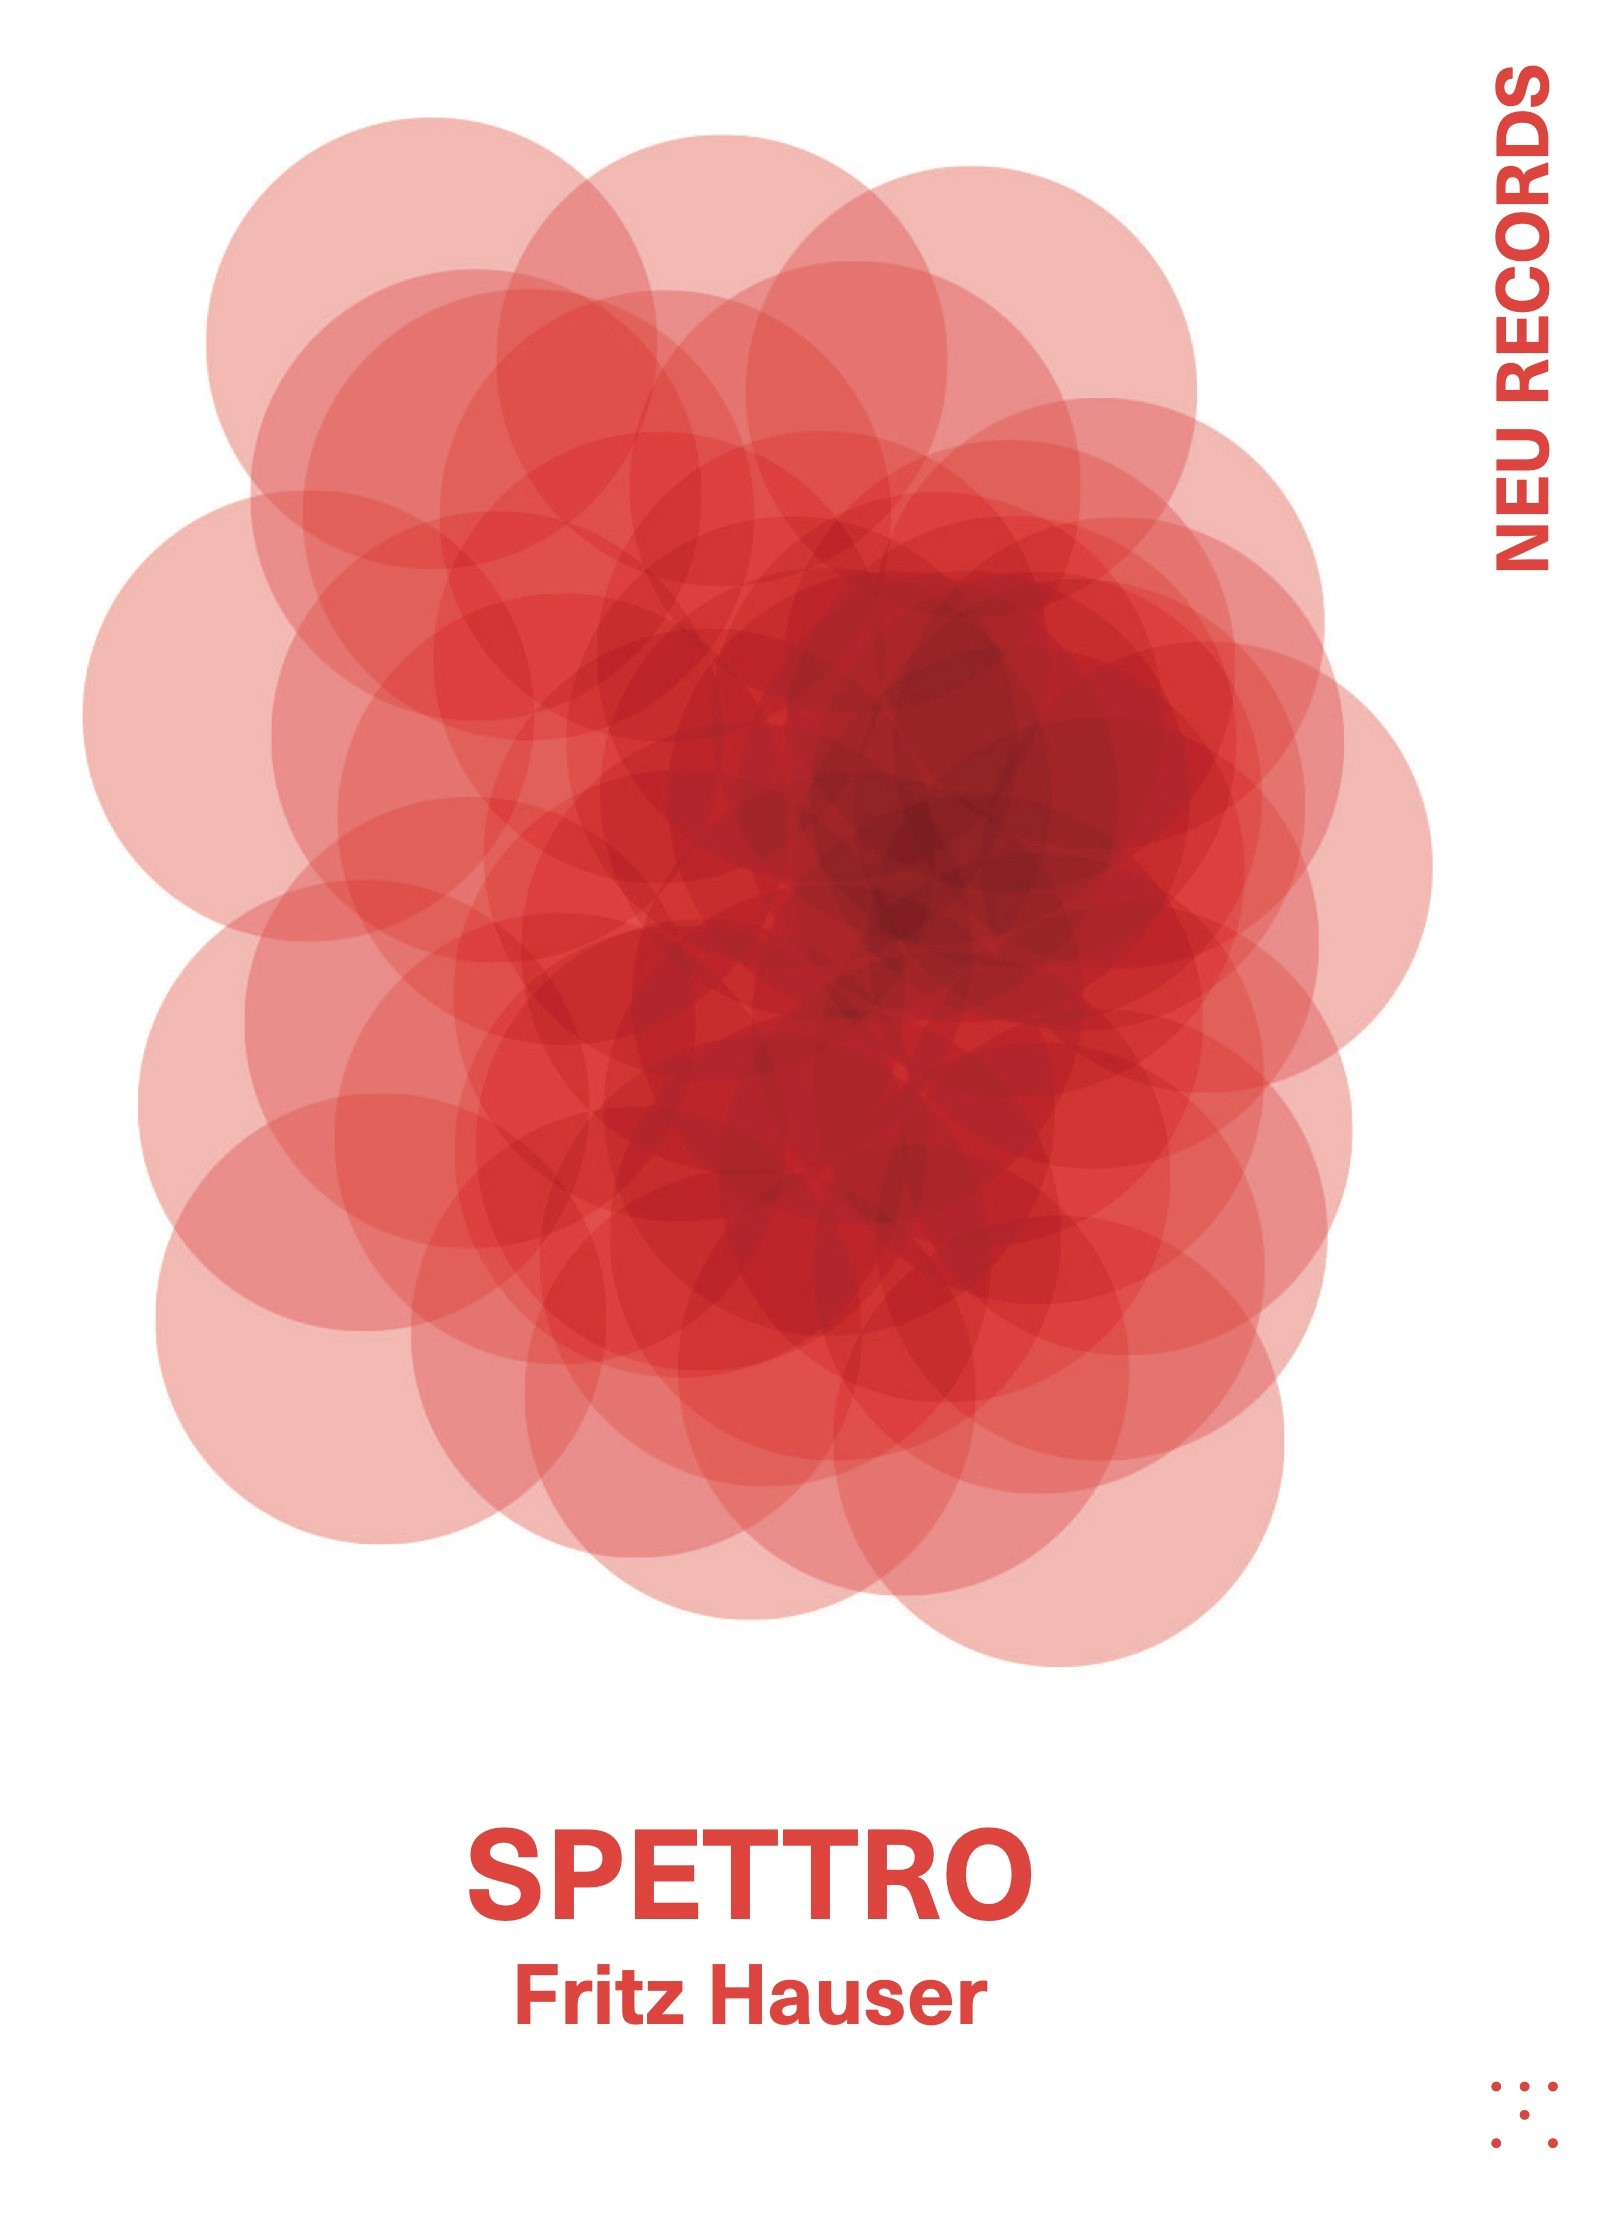 Novedades discogrficas: Fritz Hauser: Spettro editado en Neu Records